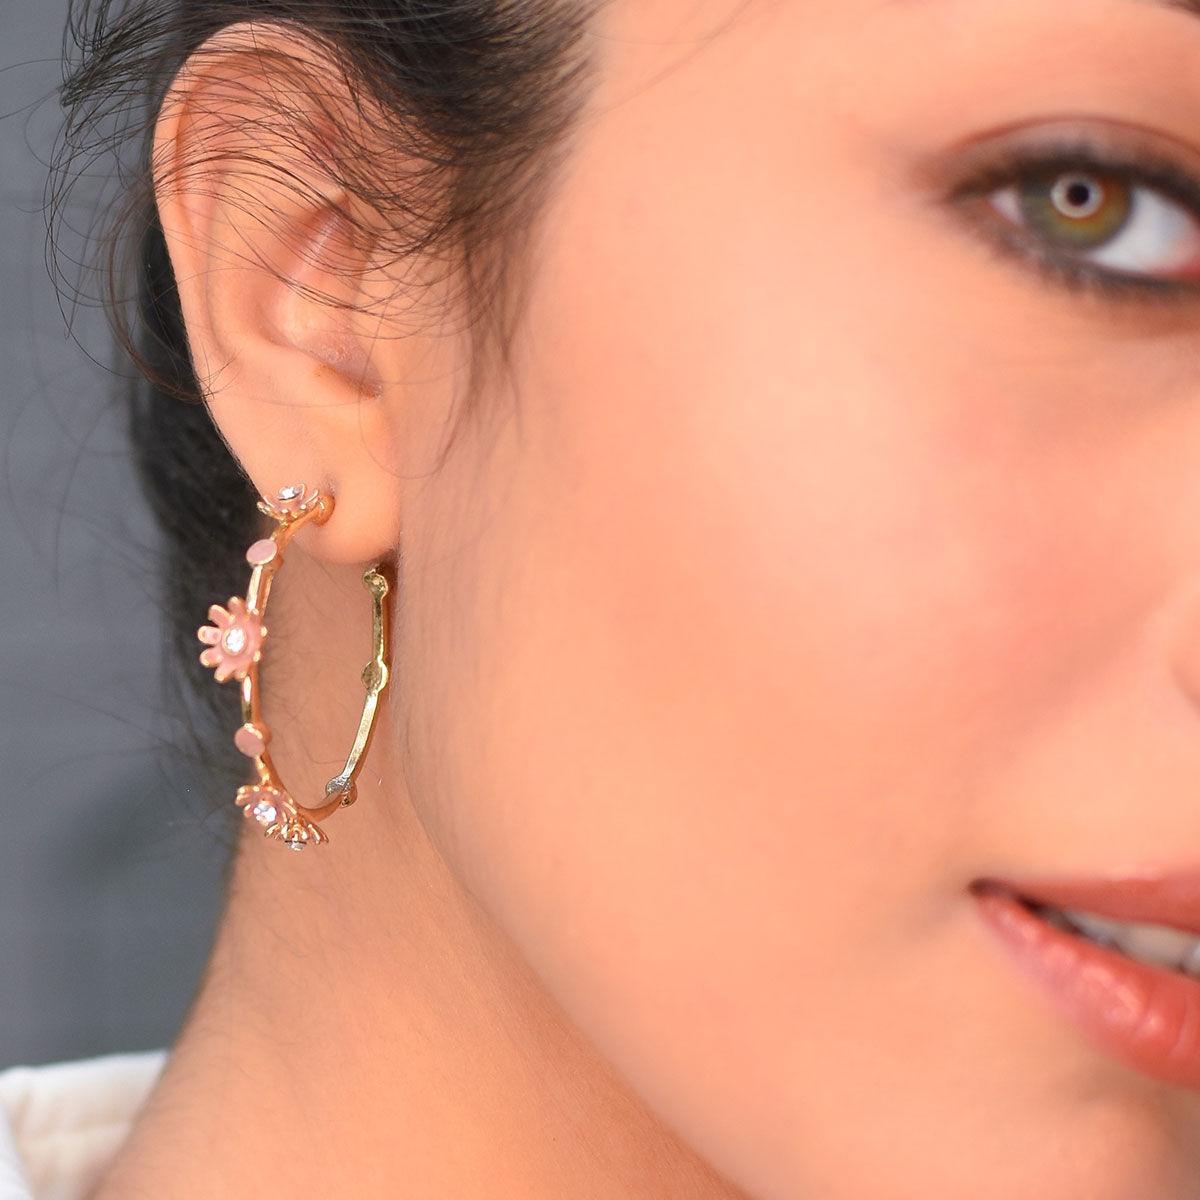 スマートフォン/携帯電話 スマートフォン本体 Toniq Gold Flower Hoop Earrings For Women(osxxe148)